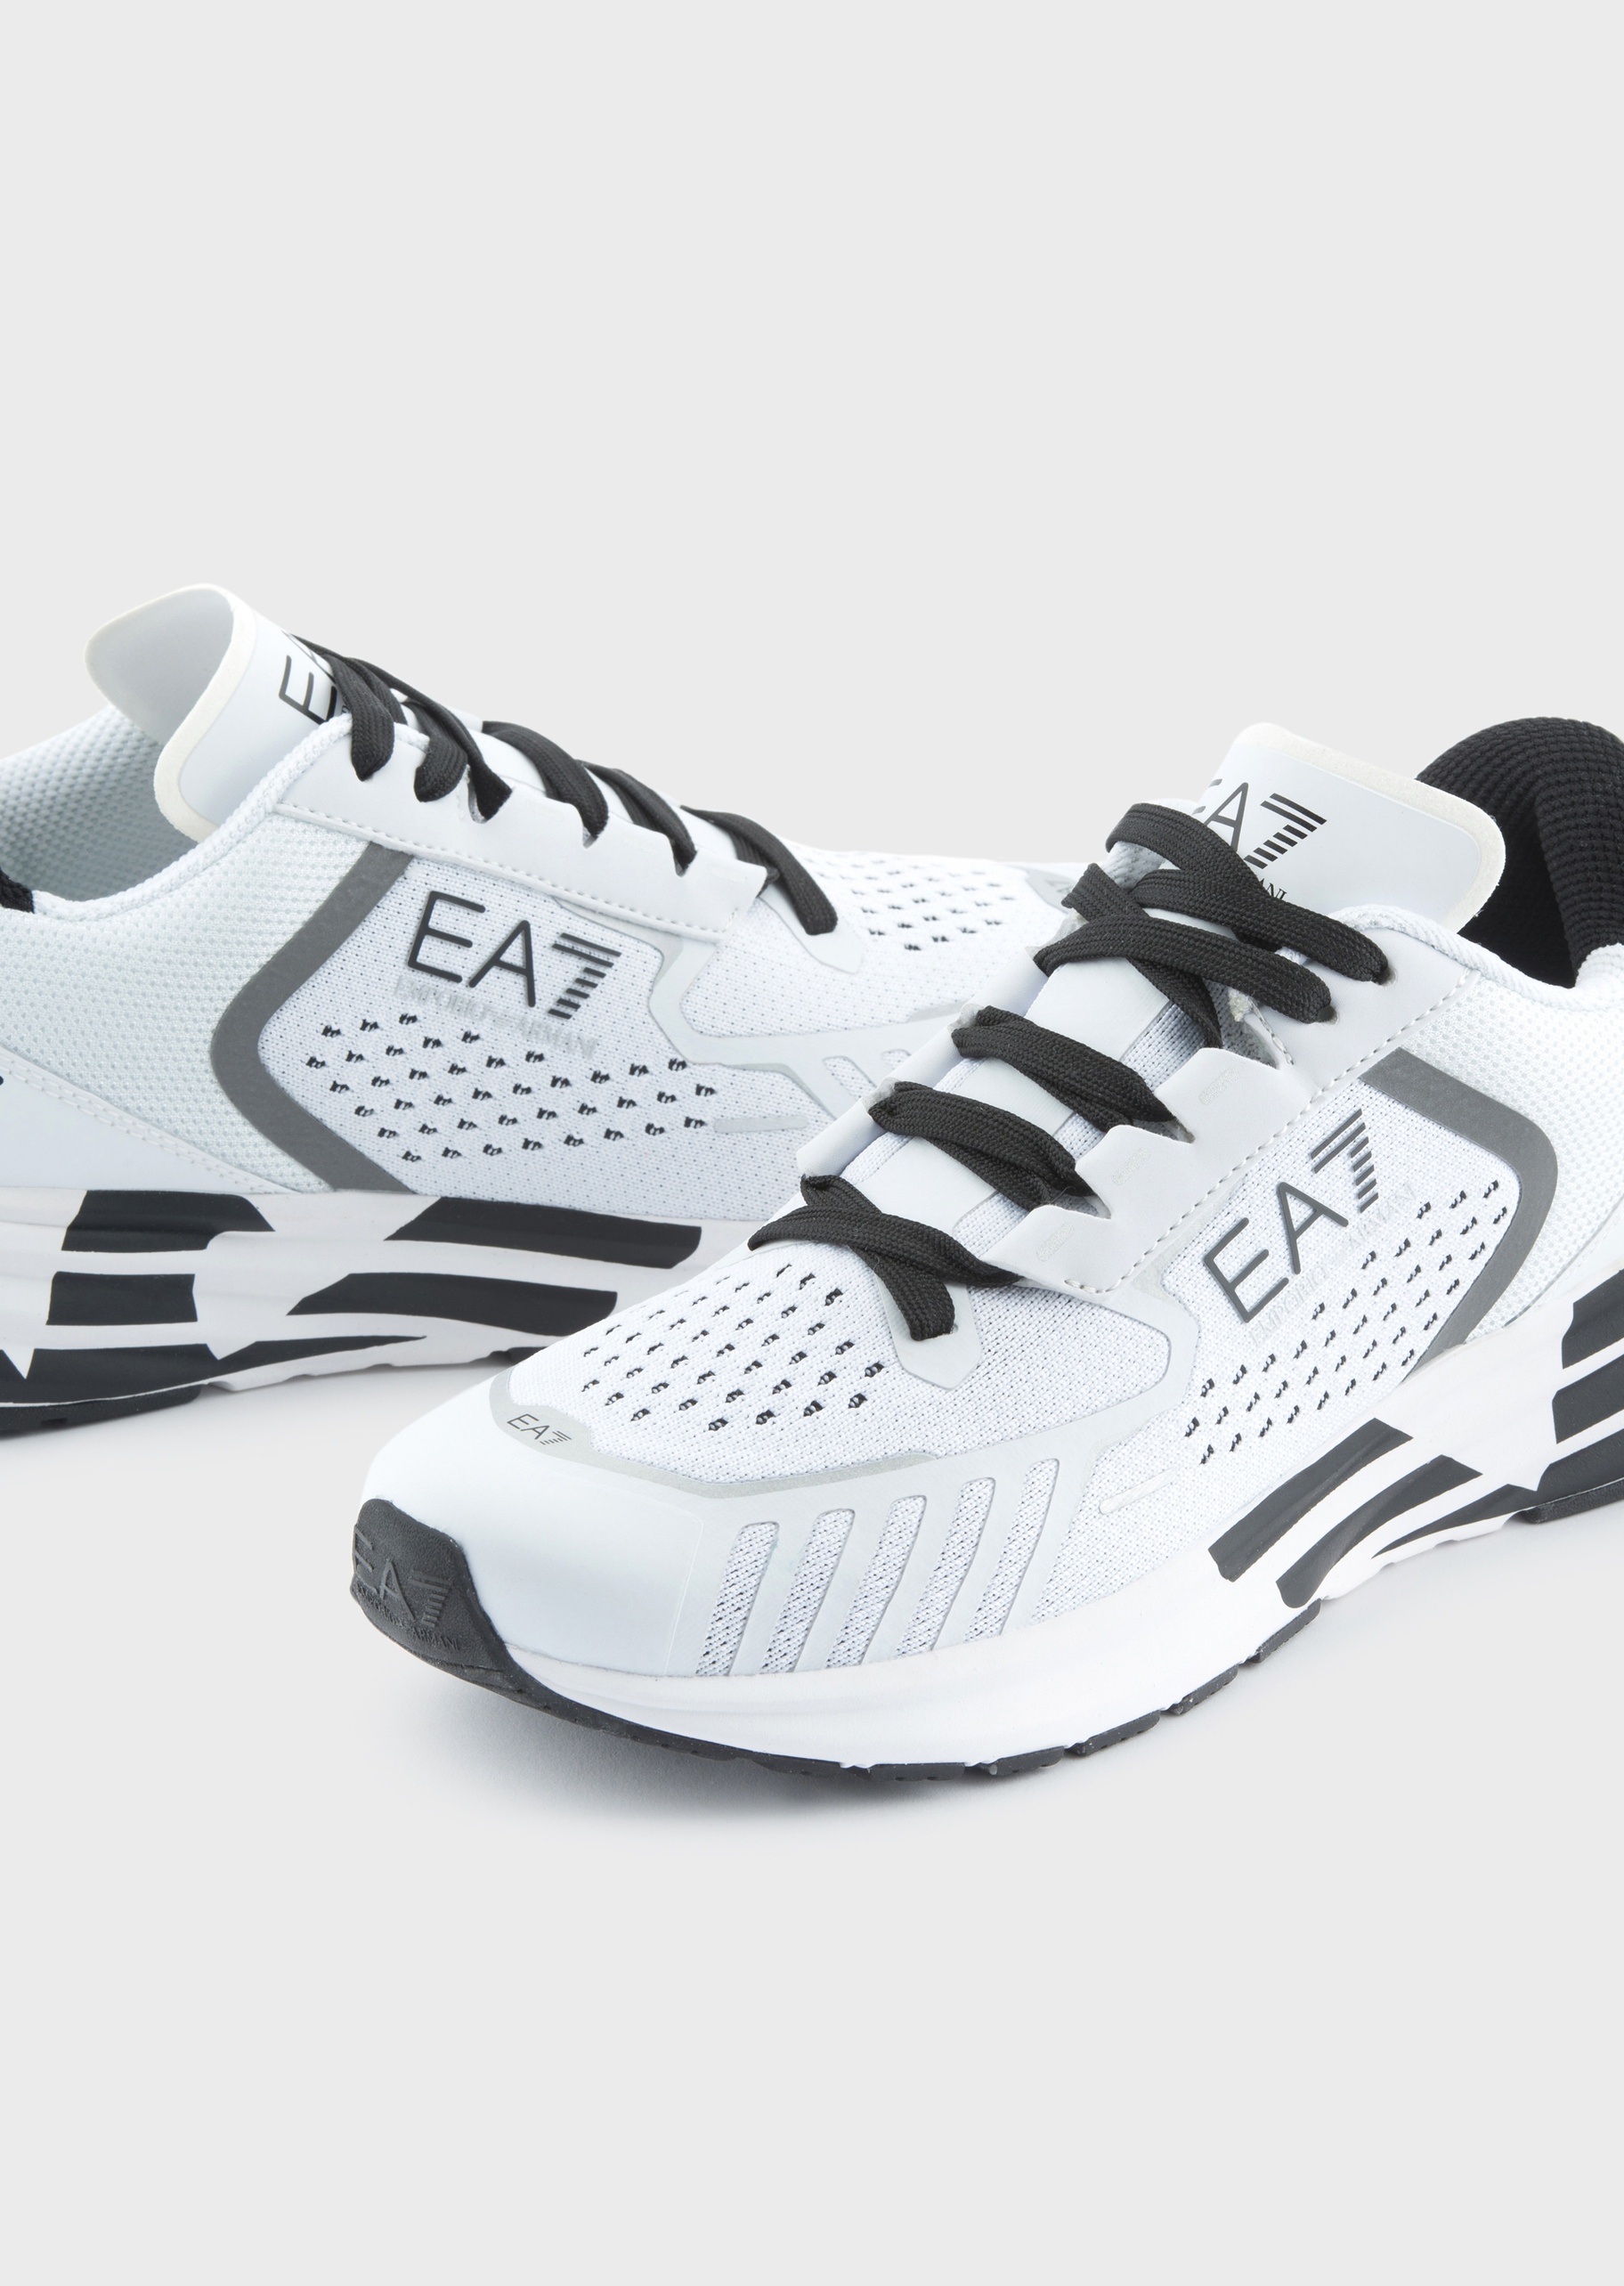 EA7 男女透气网面运动跑步鞋